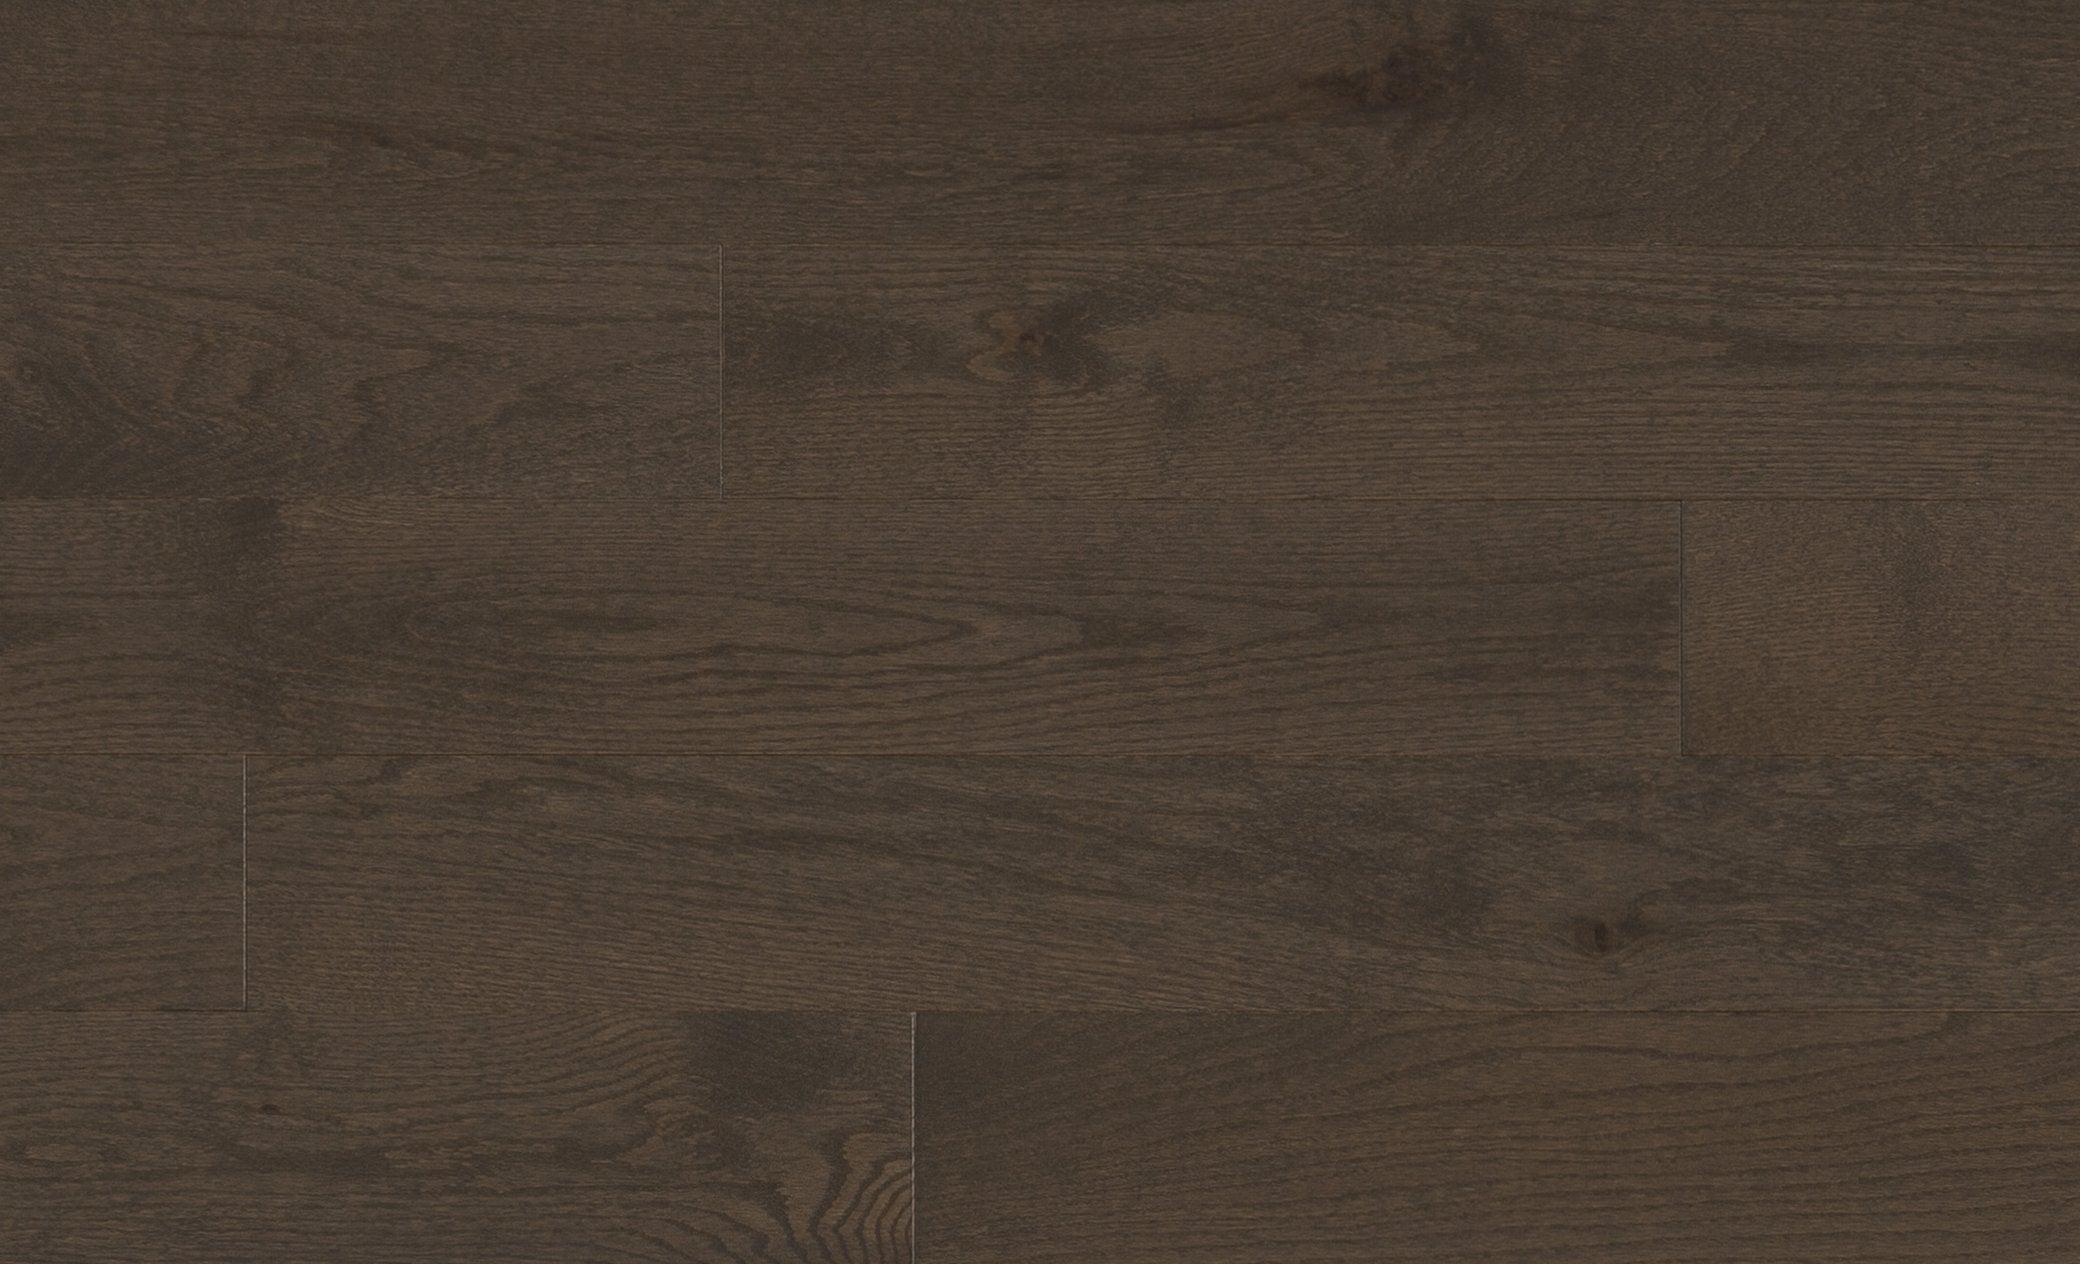 Mercier Design+ Select & Better Solid Red Oak Matte-Brushed 4.25" x 83" RL - 19mm